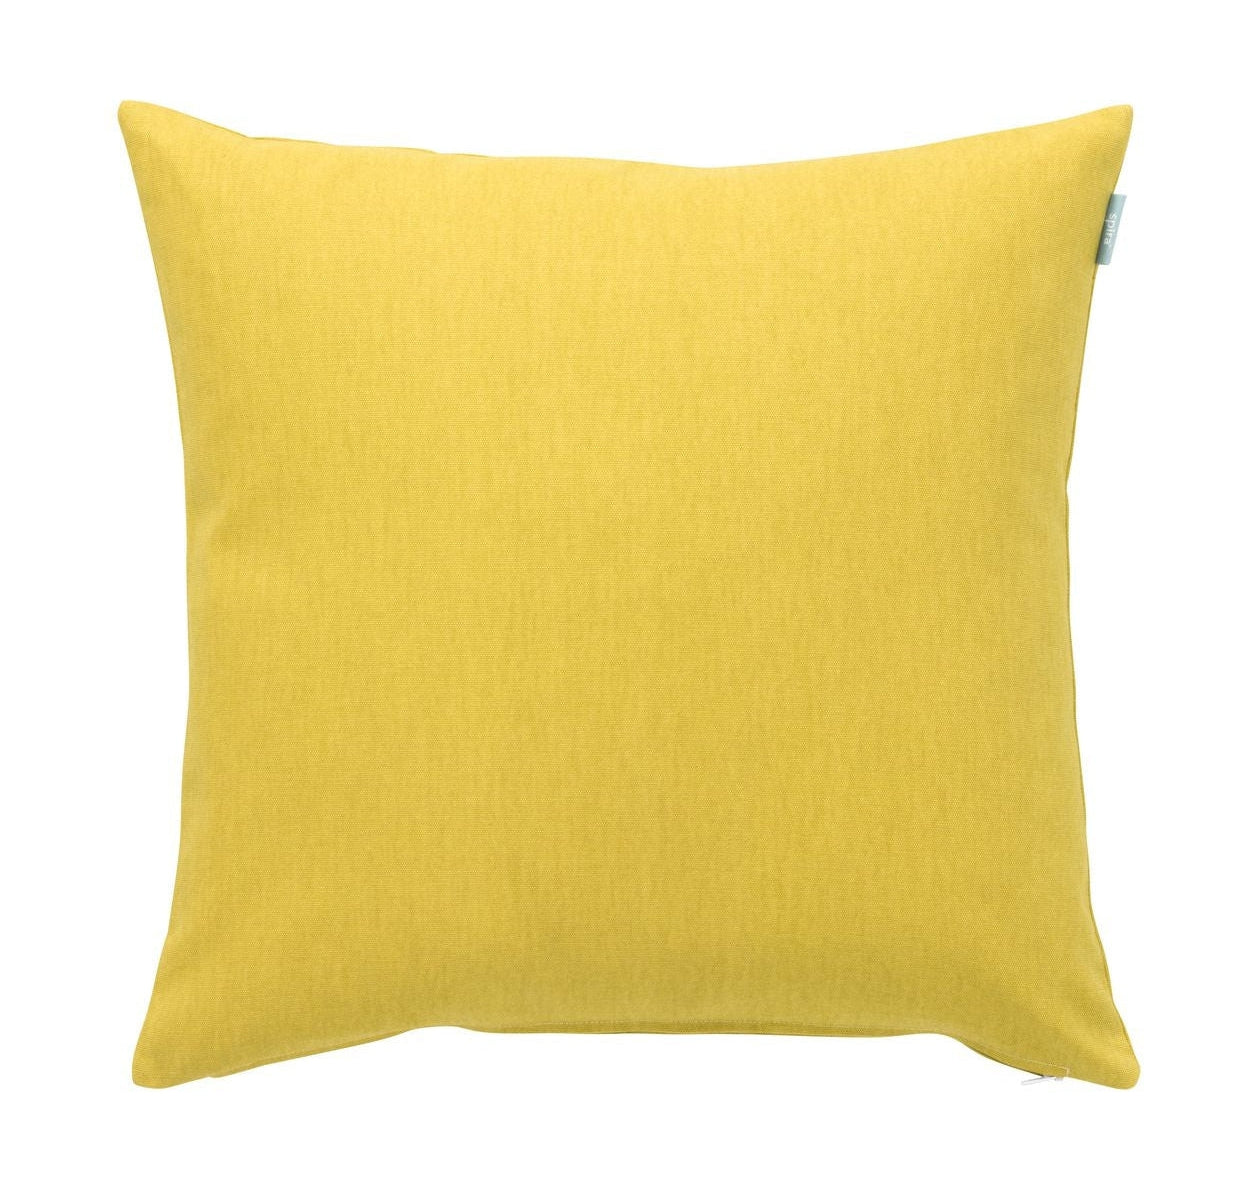 Spira Släte 60 I Klotz Cushion Cover, Yellow